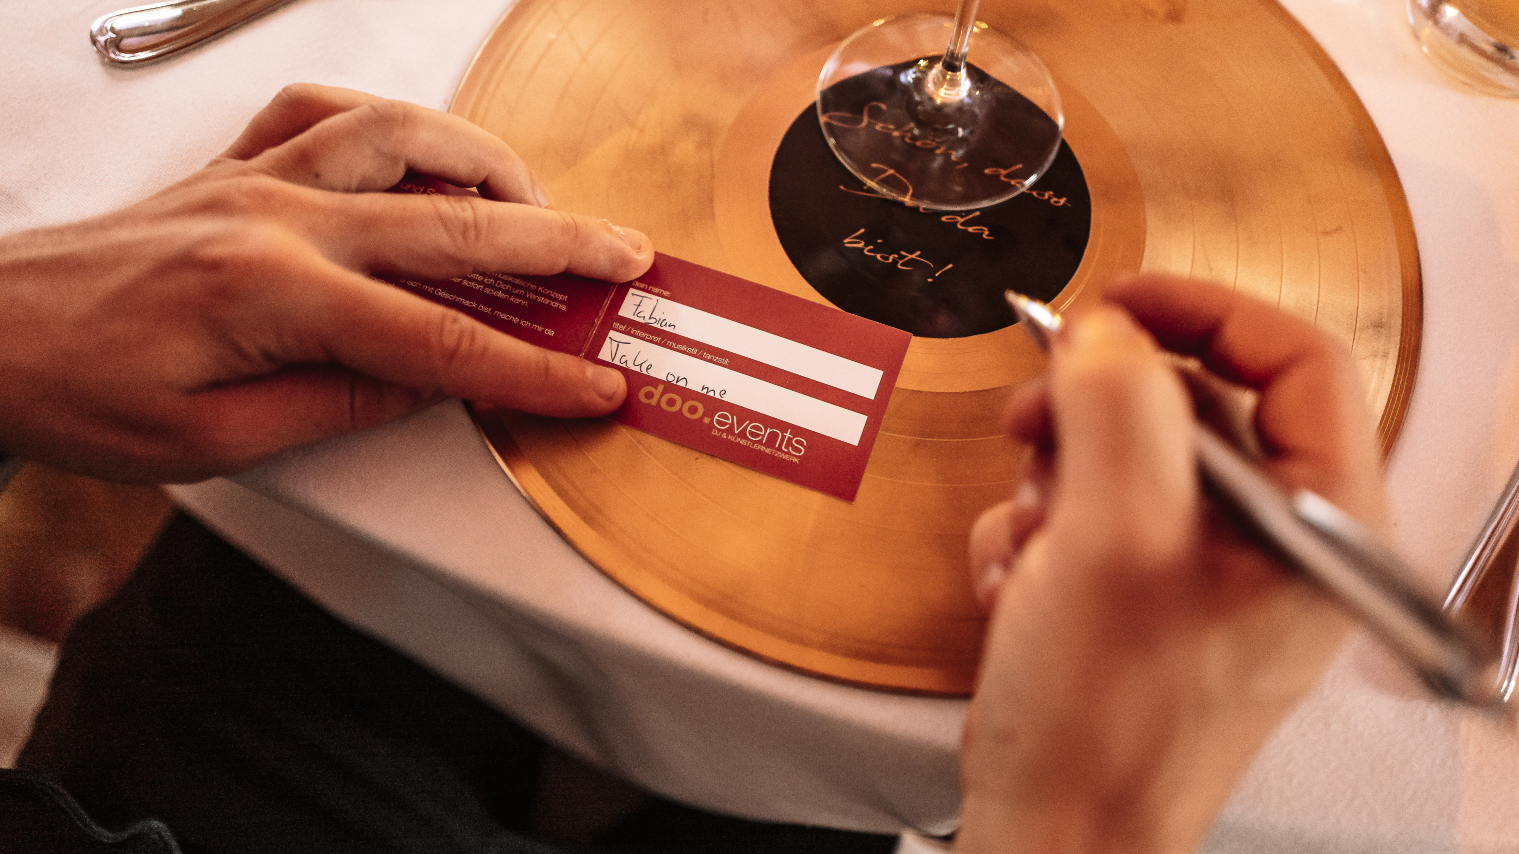 Eine Person hält bei einer Hochzeit eine Kreditkarte auf einem Goldteller.